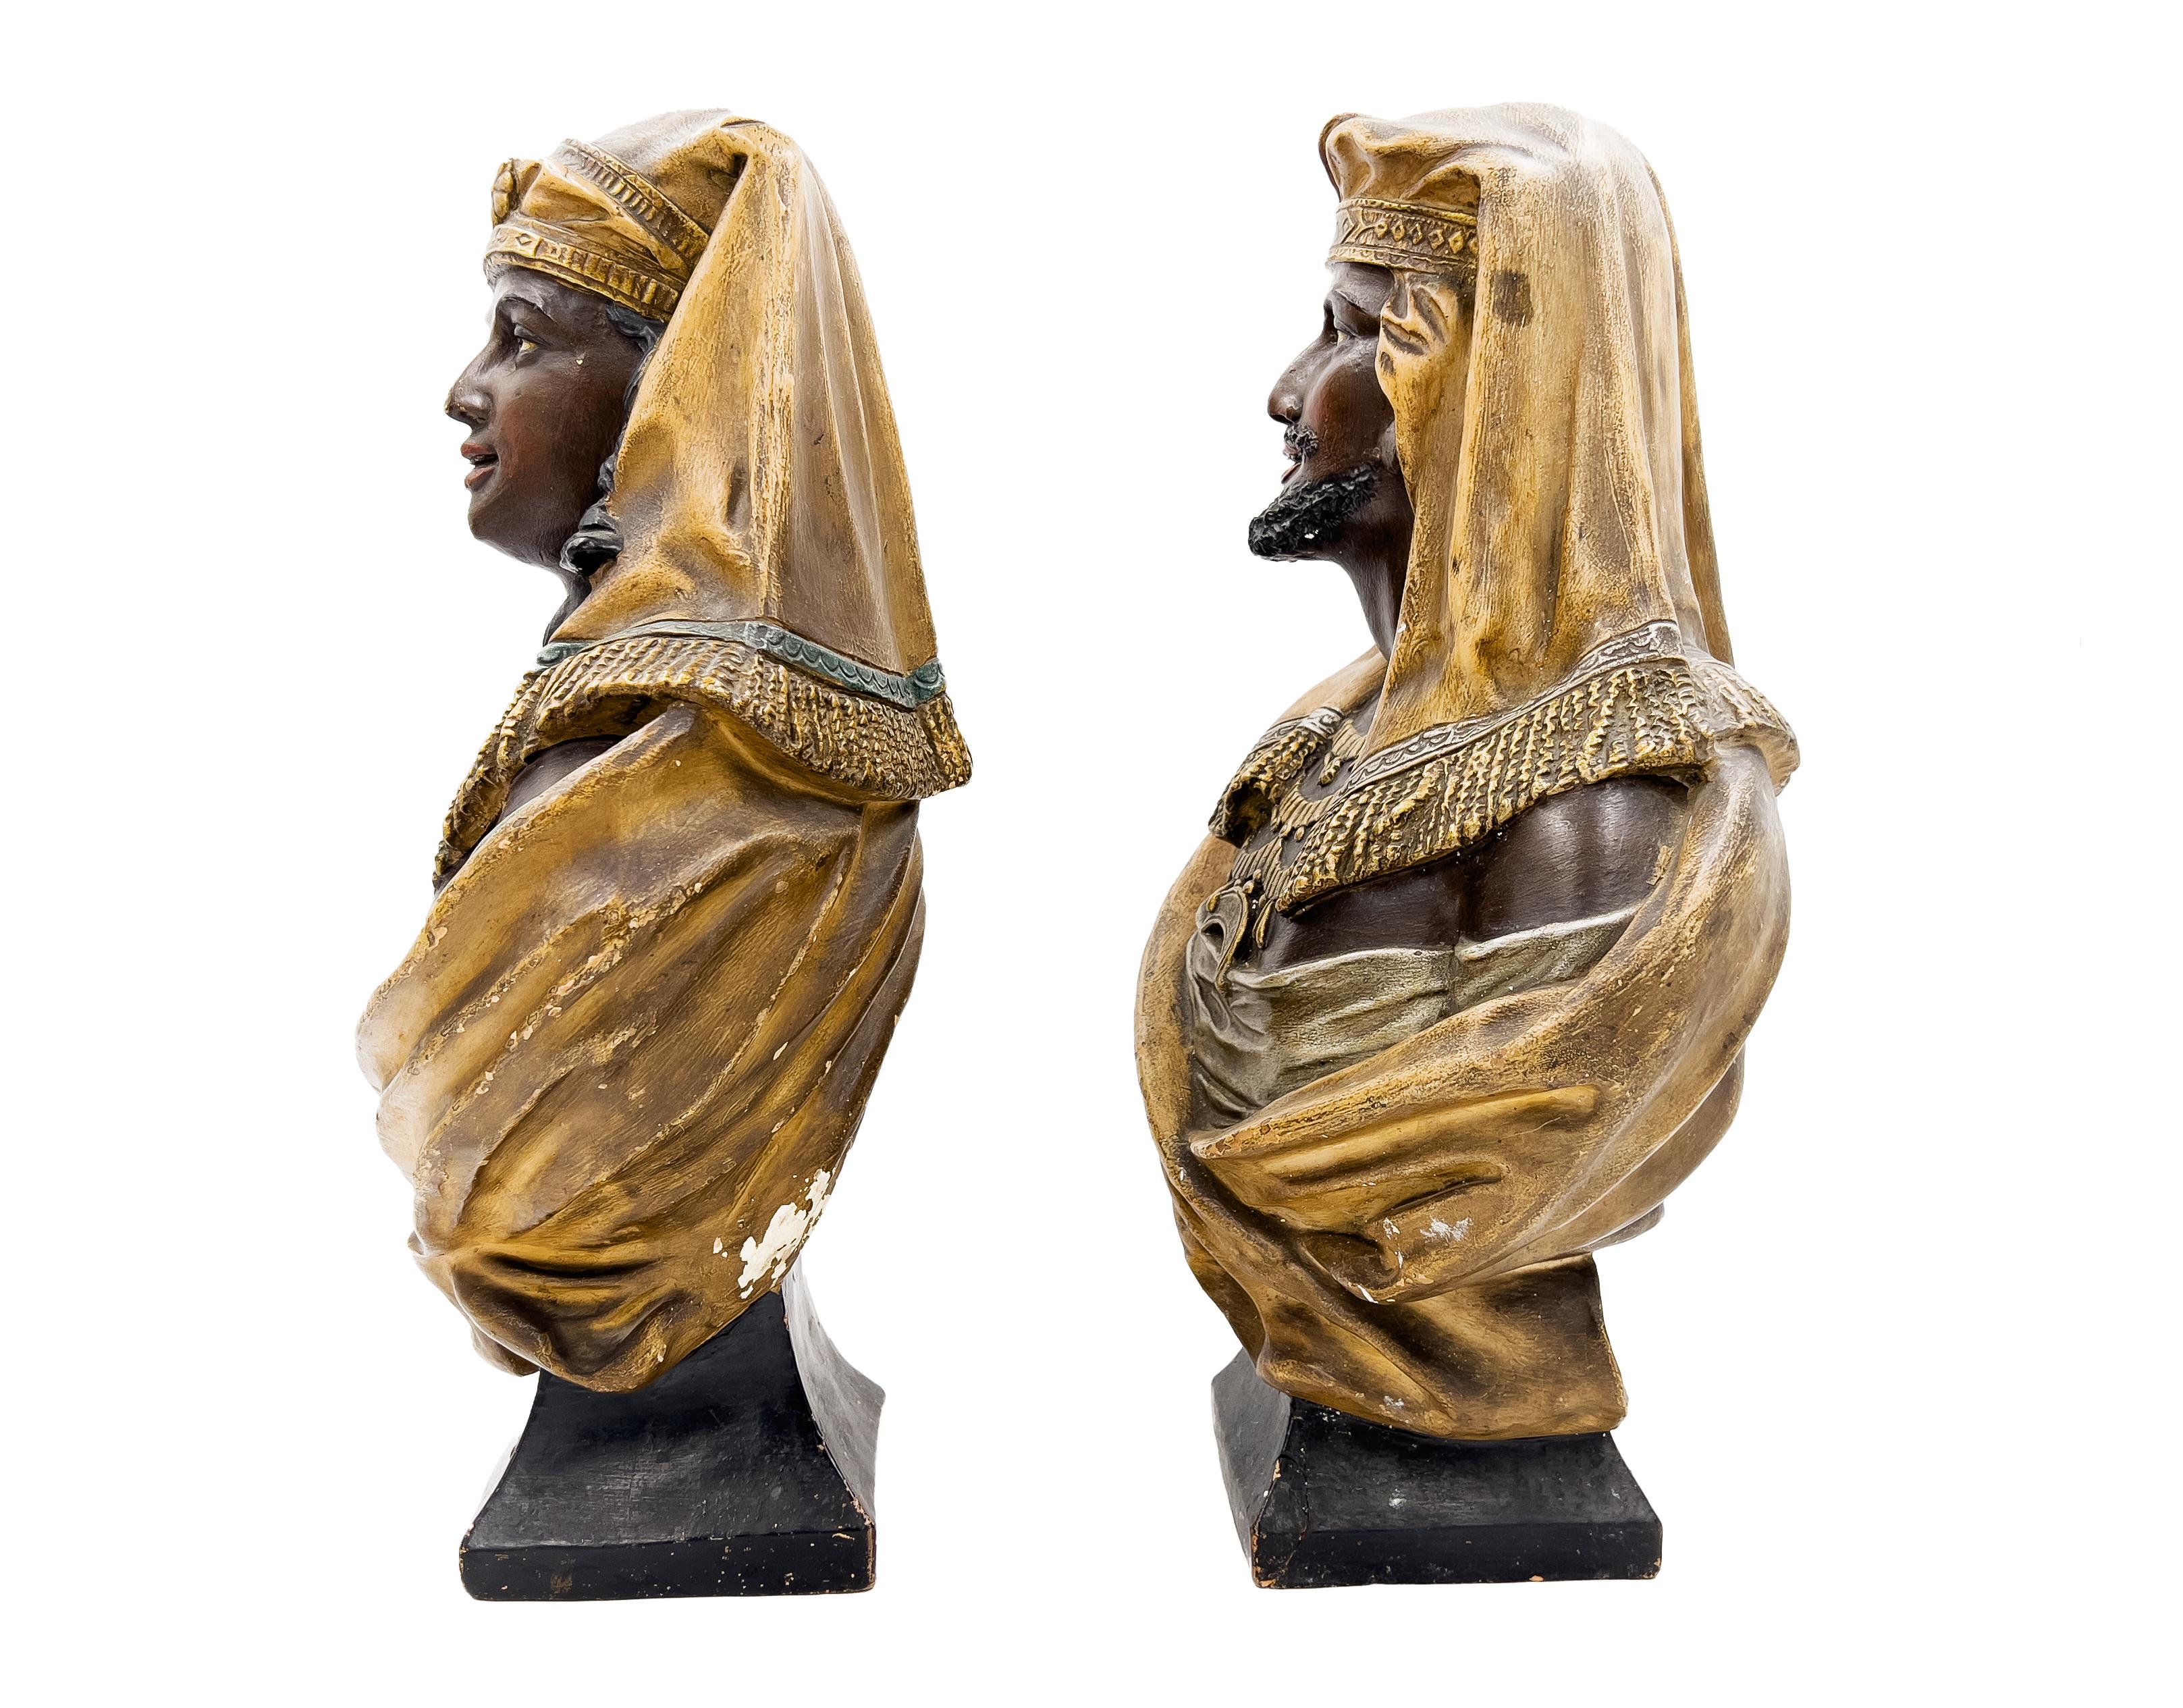 Paire de bustes en terre cuite de la fin du XIXe siècle représentant des figures orientalistes, les deux bustes portant un foulard et un collier.